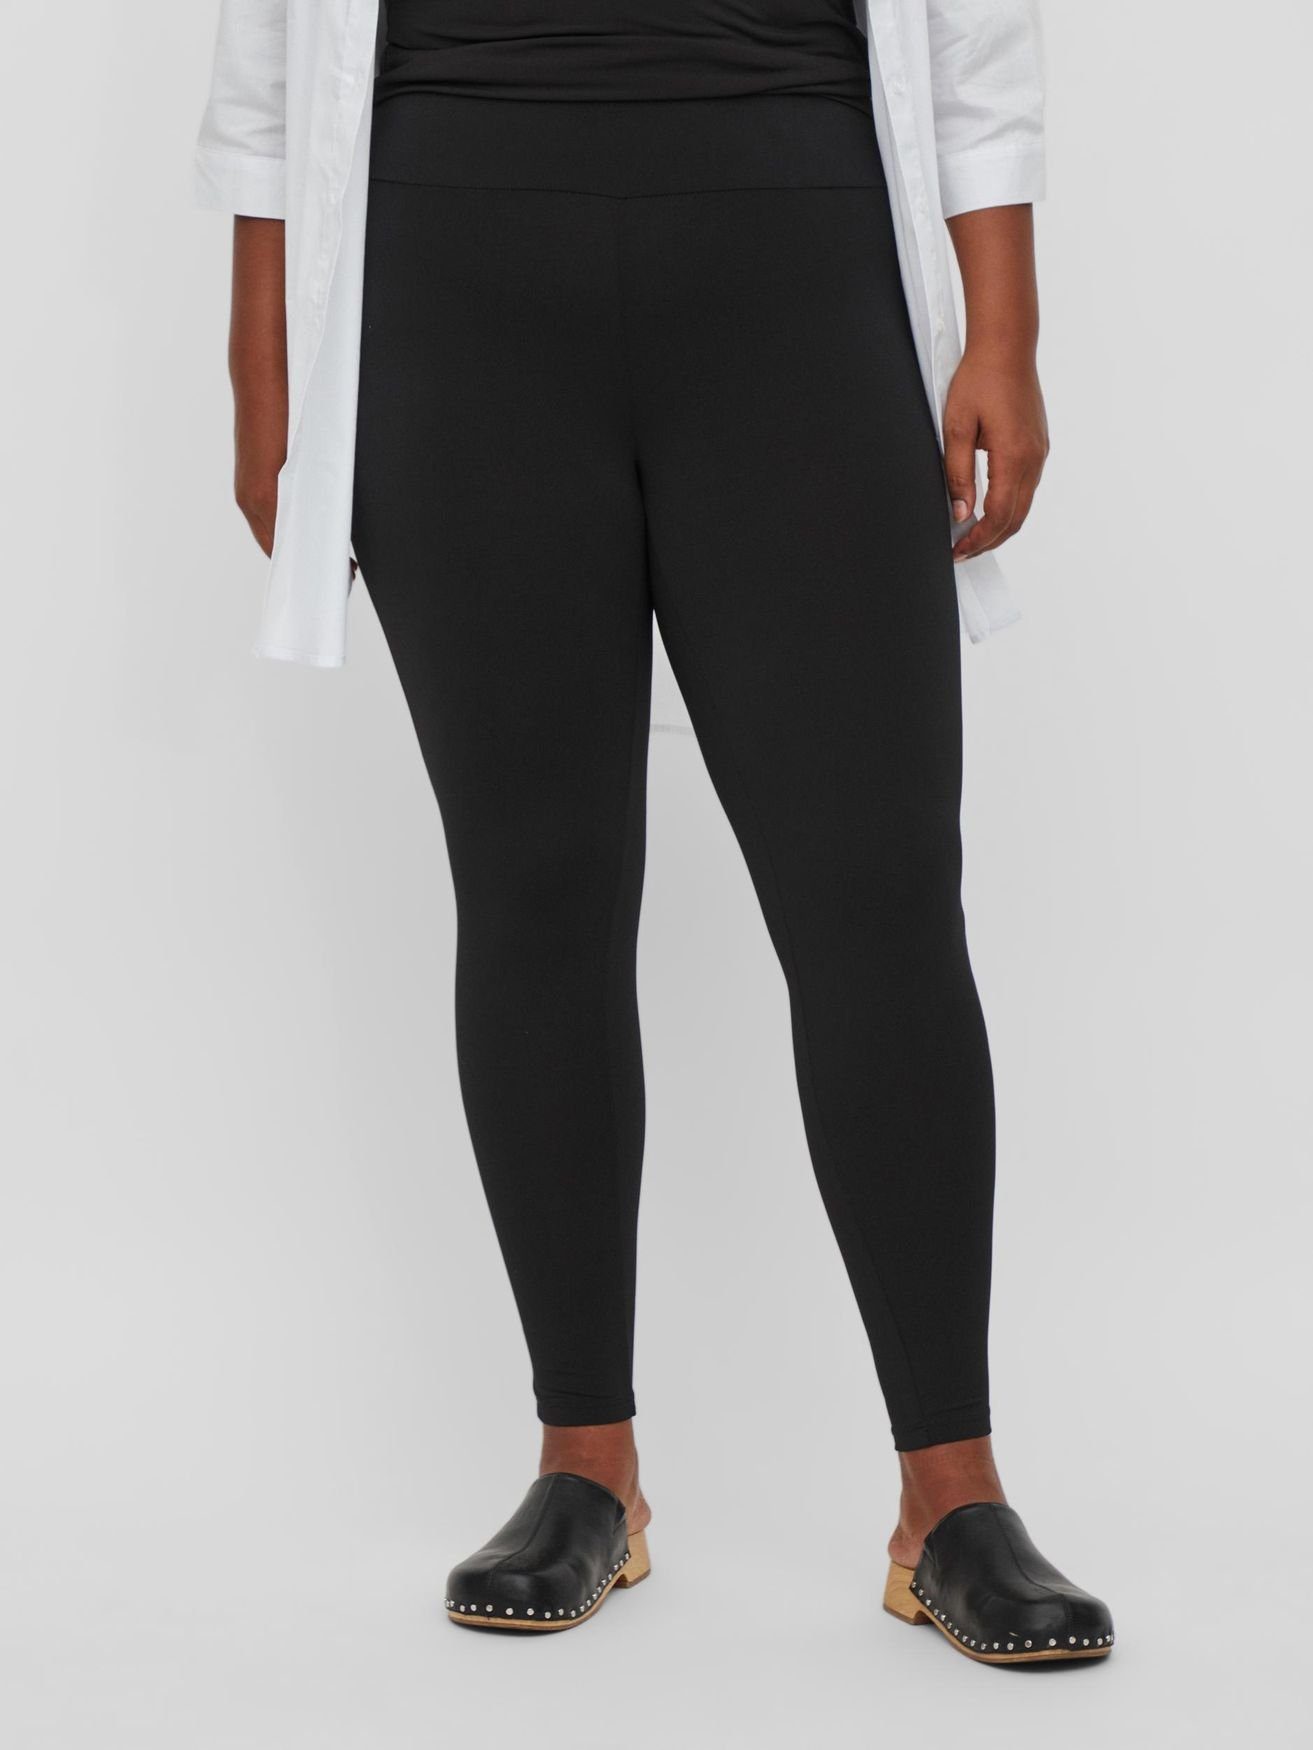 [Neue Produkte sind günstig] Vila Stoffhose Einfarbige Leggings Stretch Plus Stoff Size Hose 4614 VIJENNI in Schwarz Übergröße